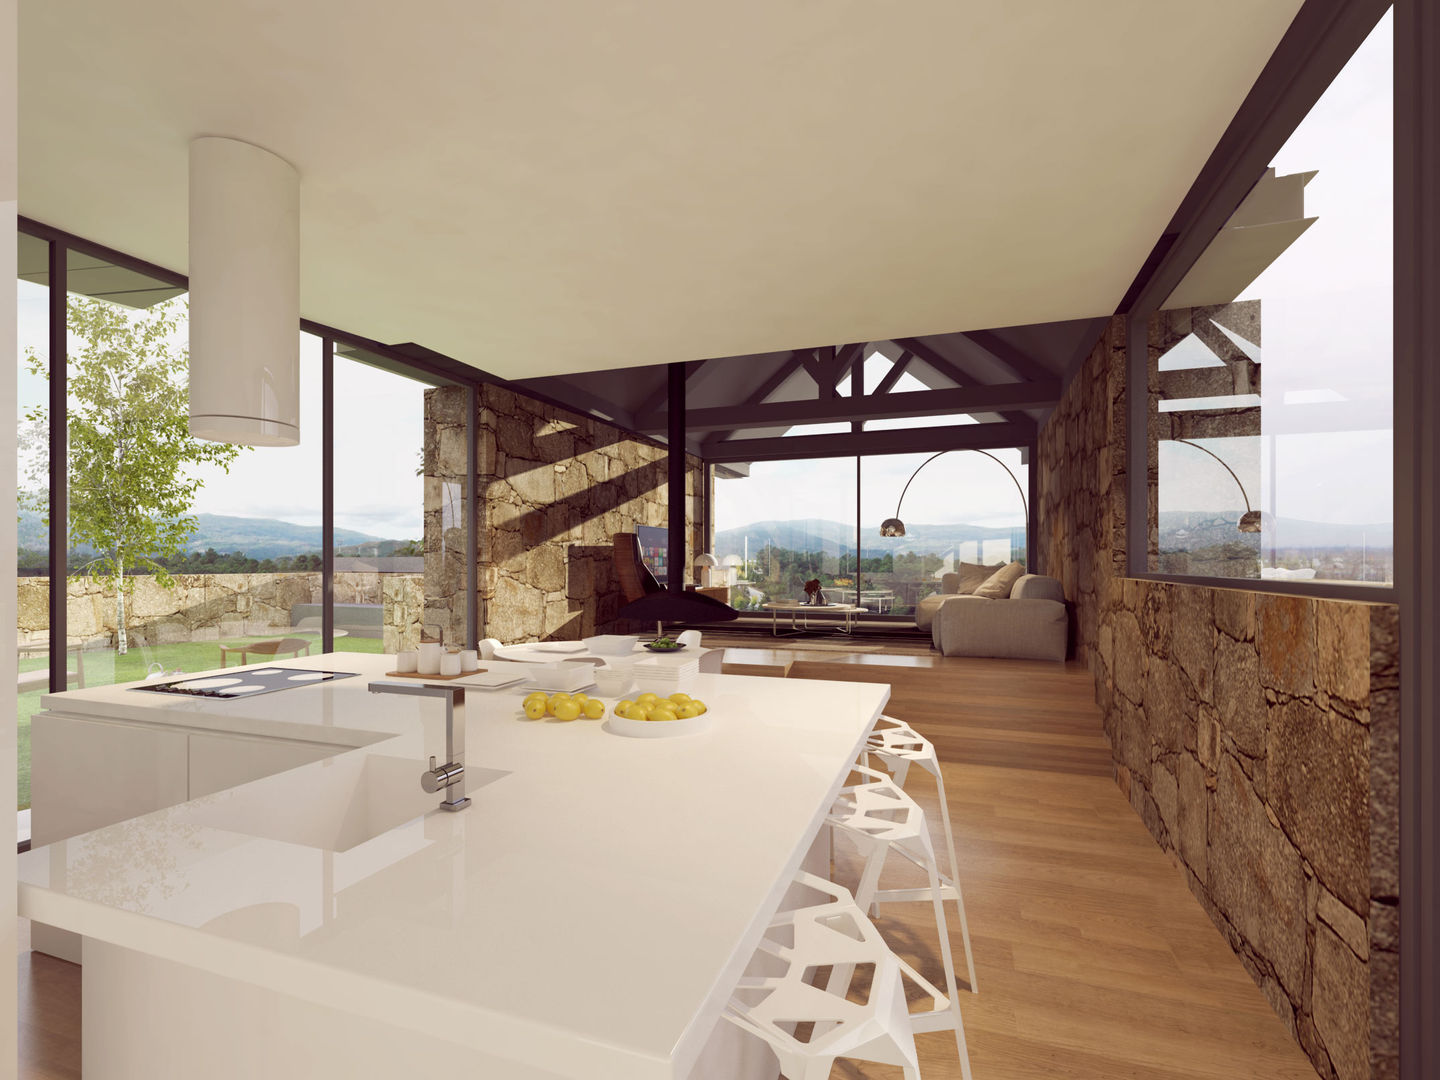 imagens 3d - cozinha e sala de estar Davide Domingues Arquitecto Cozinhas rústicas